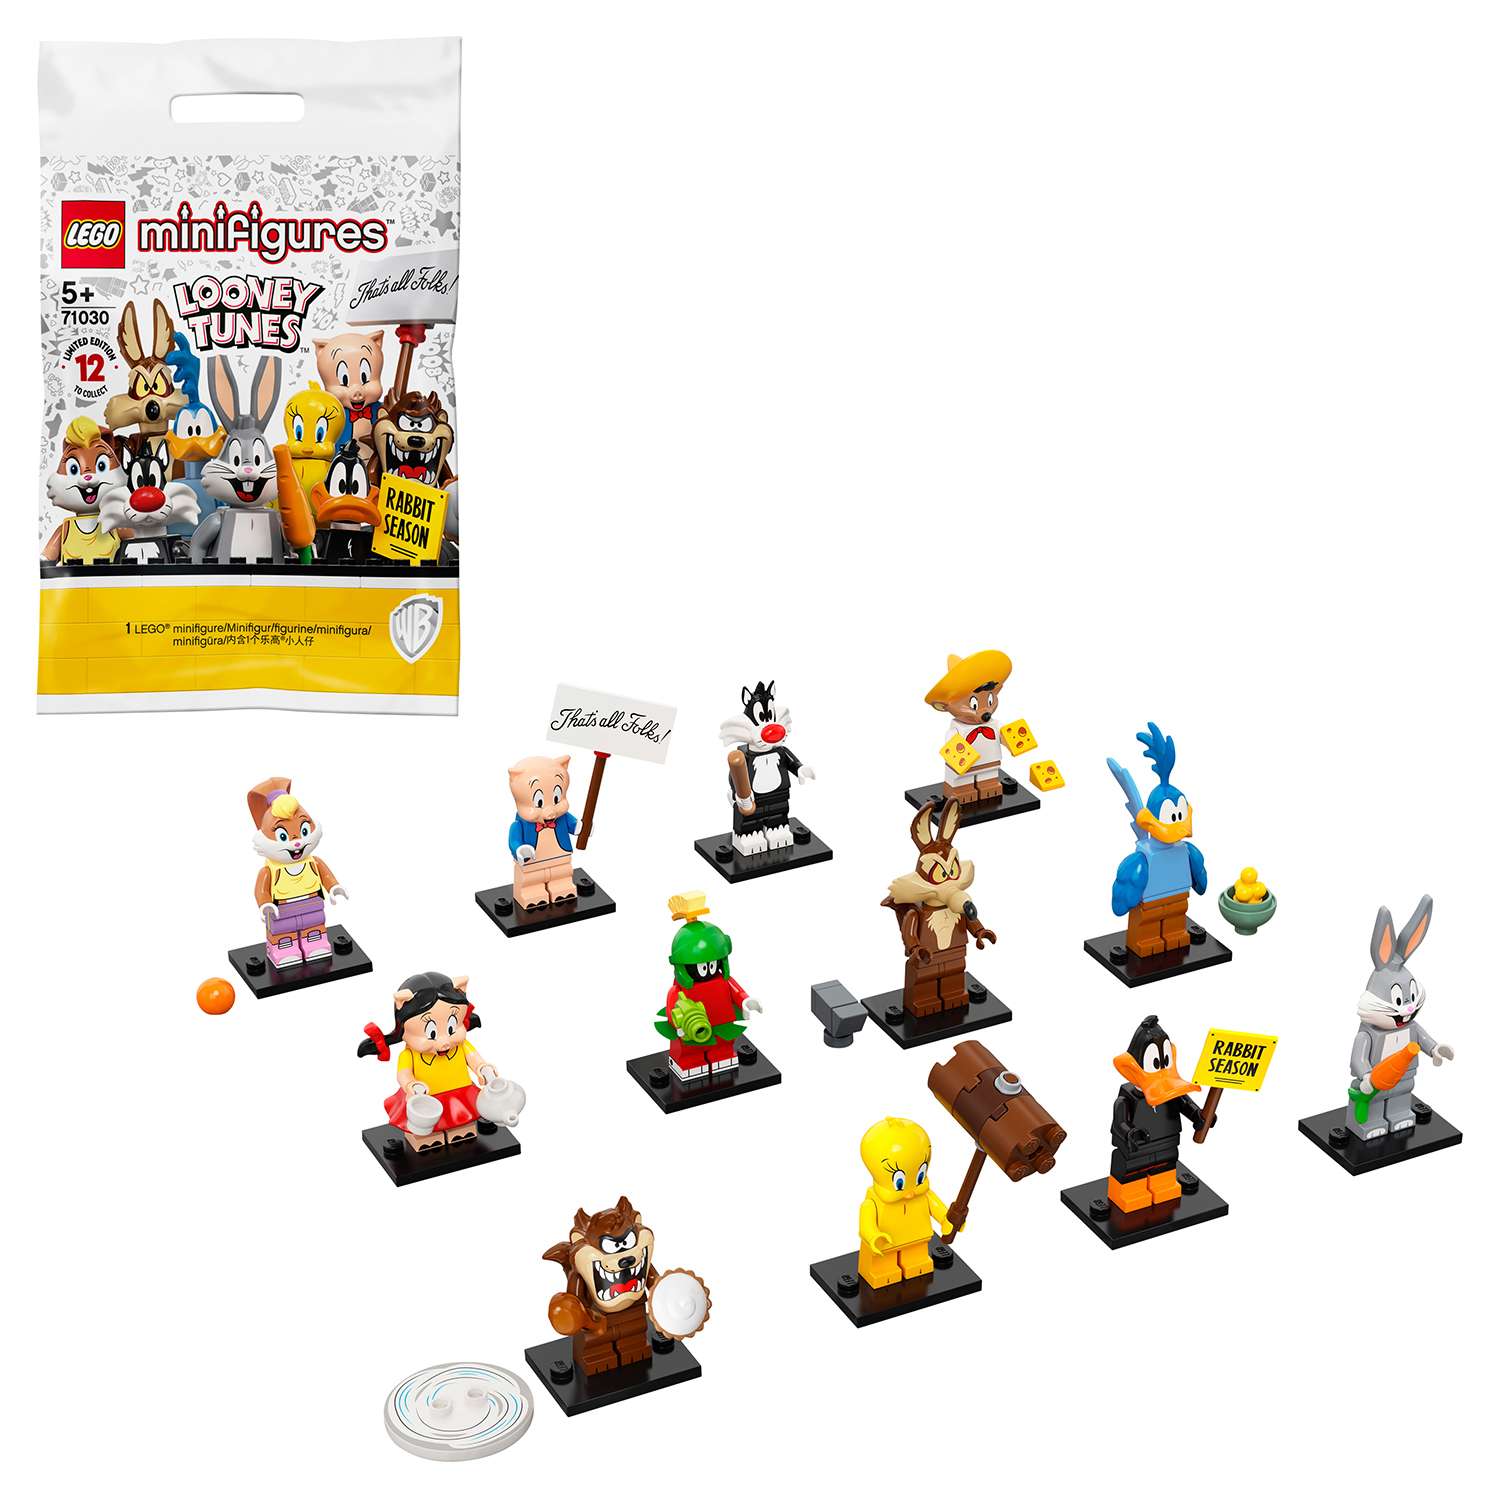 Конструктор LEGO Minifigures Минифигурки Looney Tunes в непрозрачной упаковке (Сюрприз)71030 - фото 1